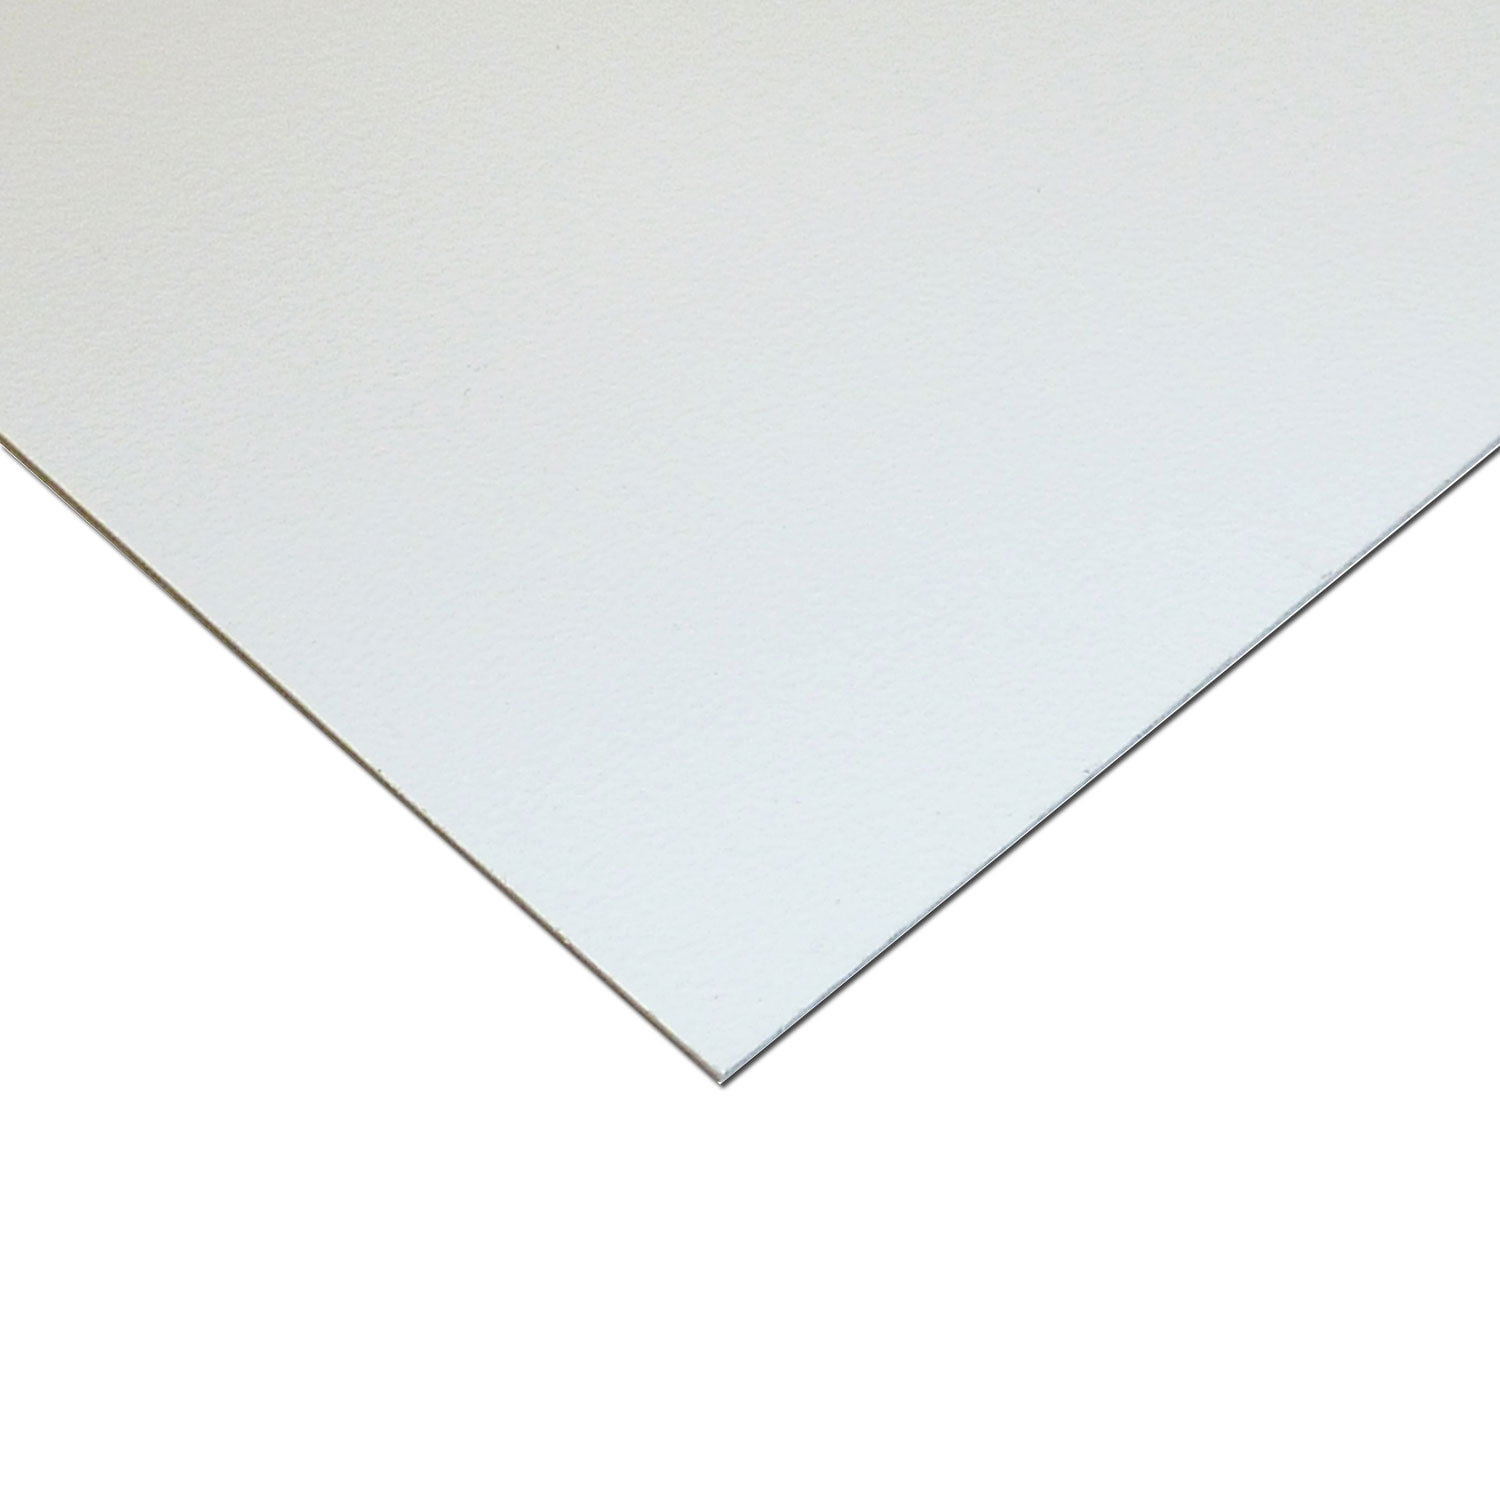 SMALL RECTANGLES Styrene Plastic Sheets HIPS ABS Embossed White Plasticard 